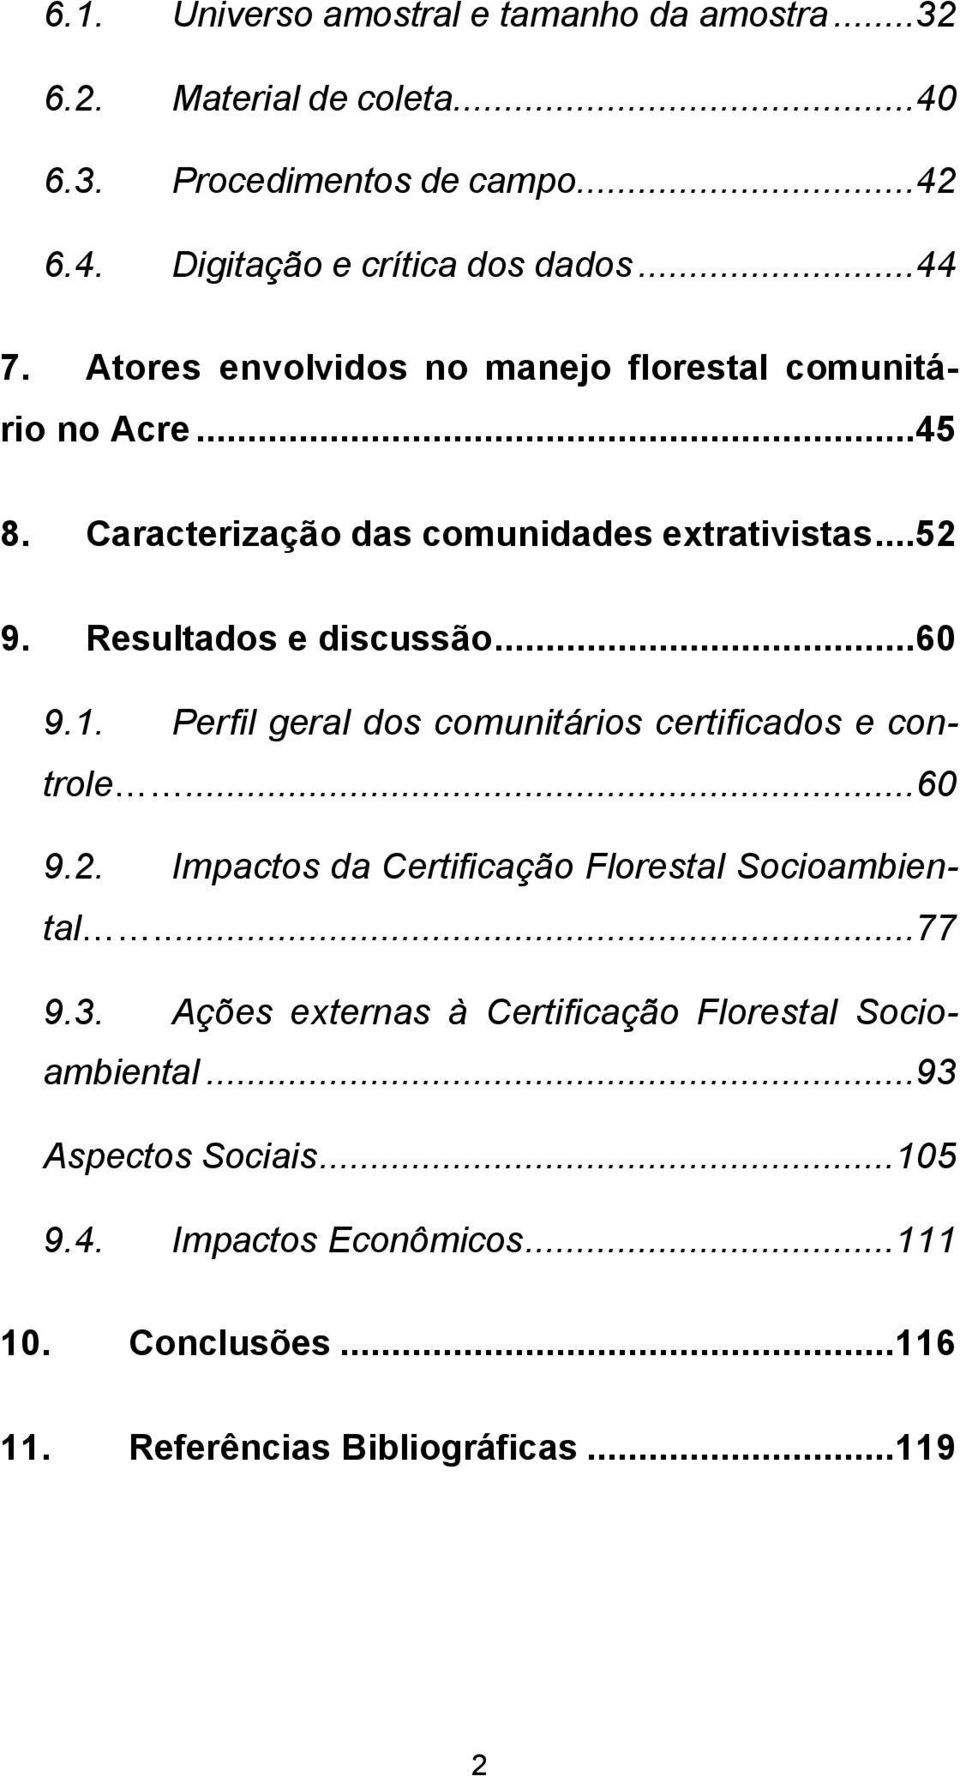 Perfil geral dos comunitários certificados e controle...60 9.2. Impactos da Certificação Florestal Socioambiental...77 9.3.